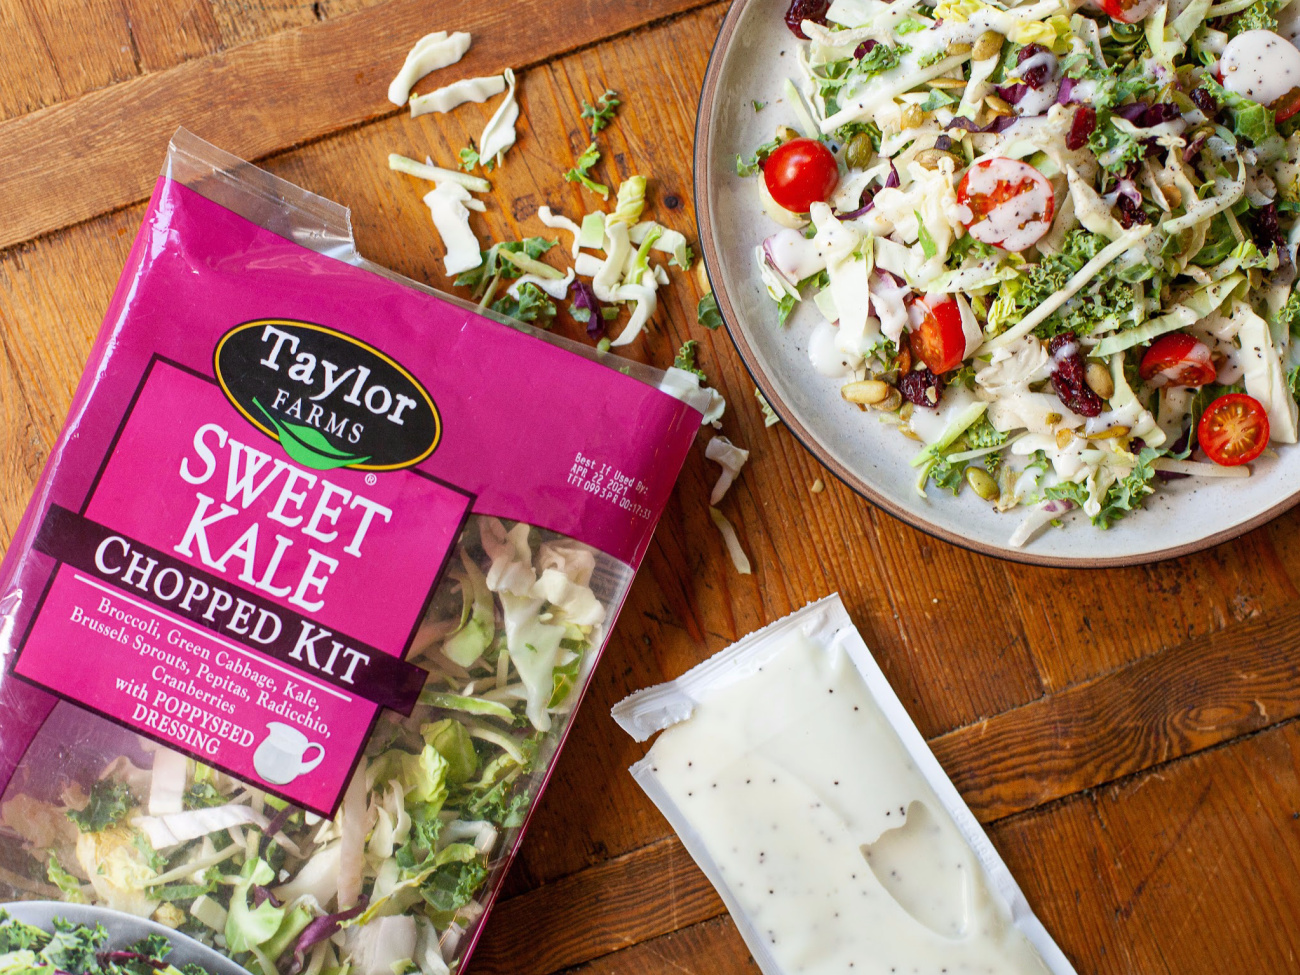 Taylor Farms Chopped Salad Kits Just $2.74 At Kroger